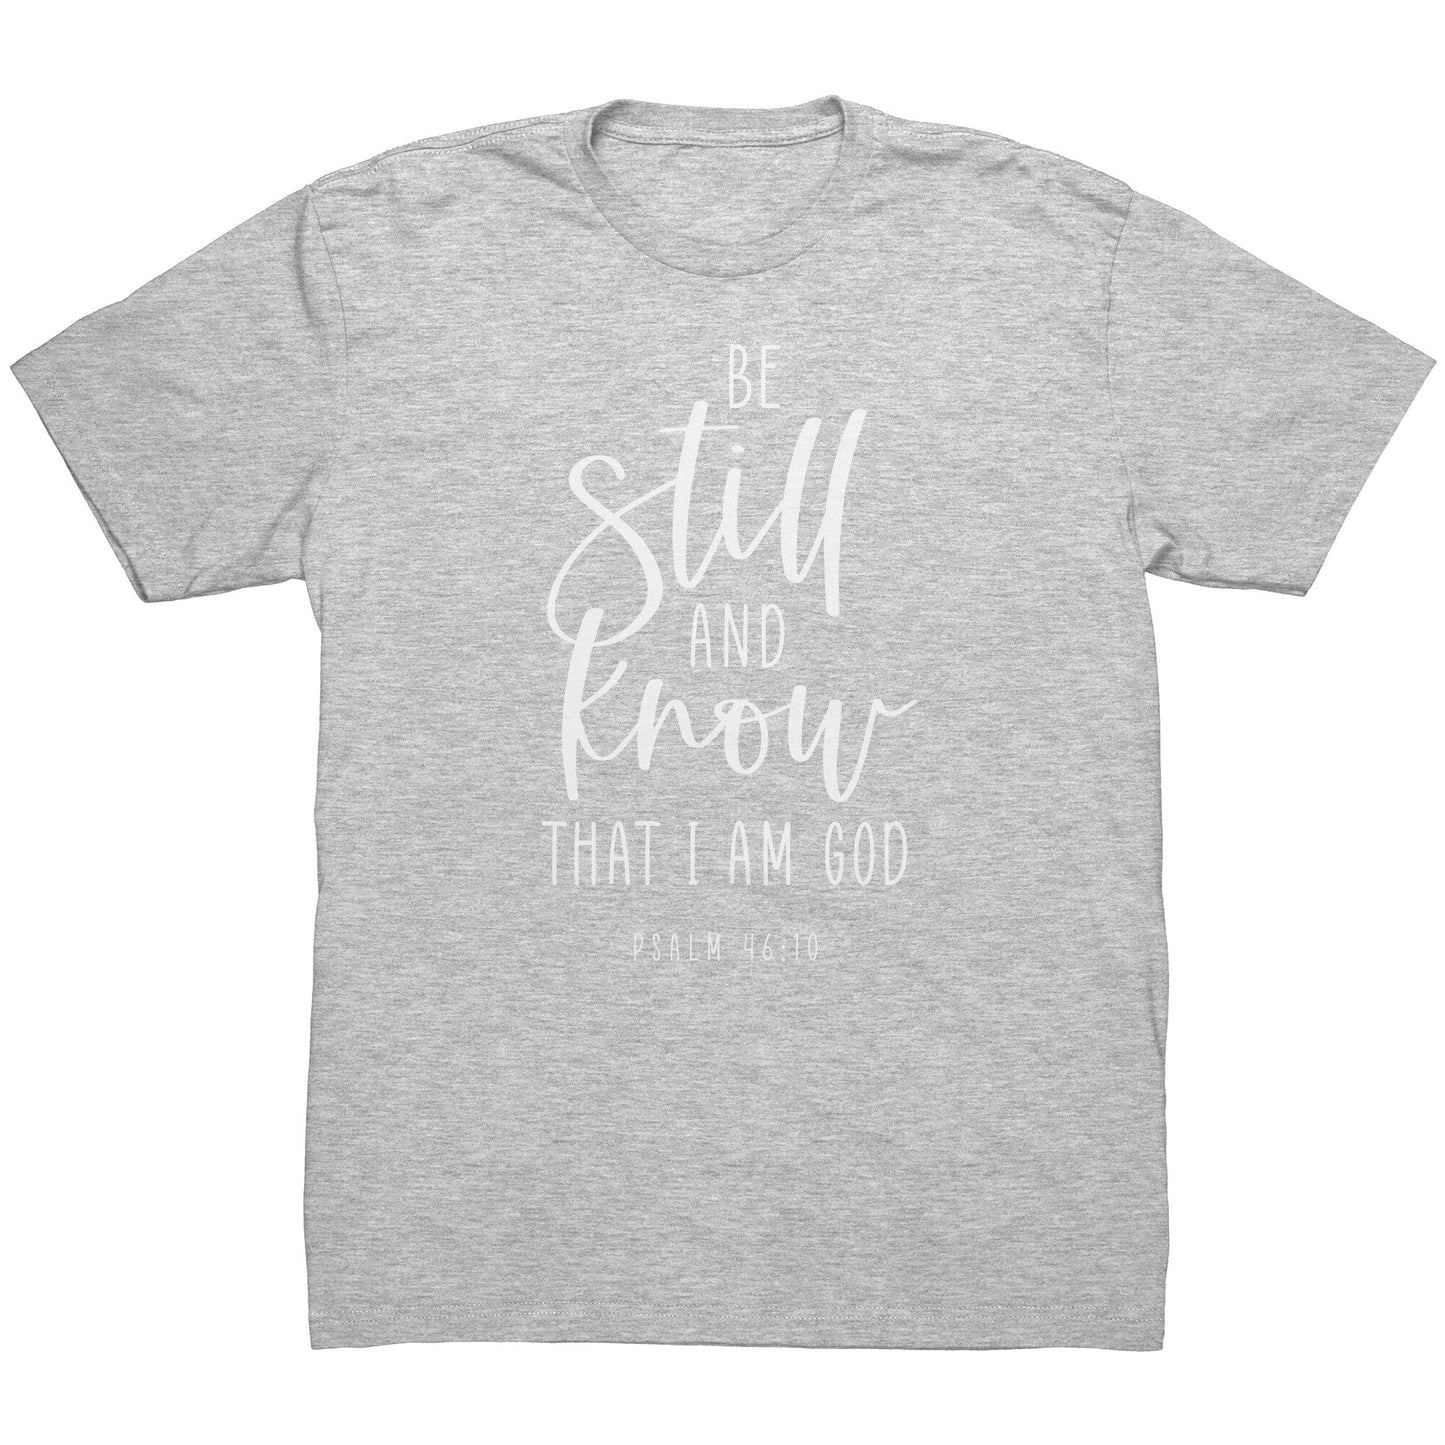 Psalm 46:10 Men's T-Shirt